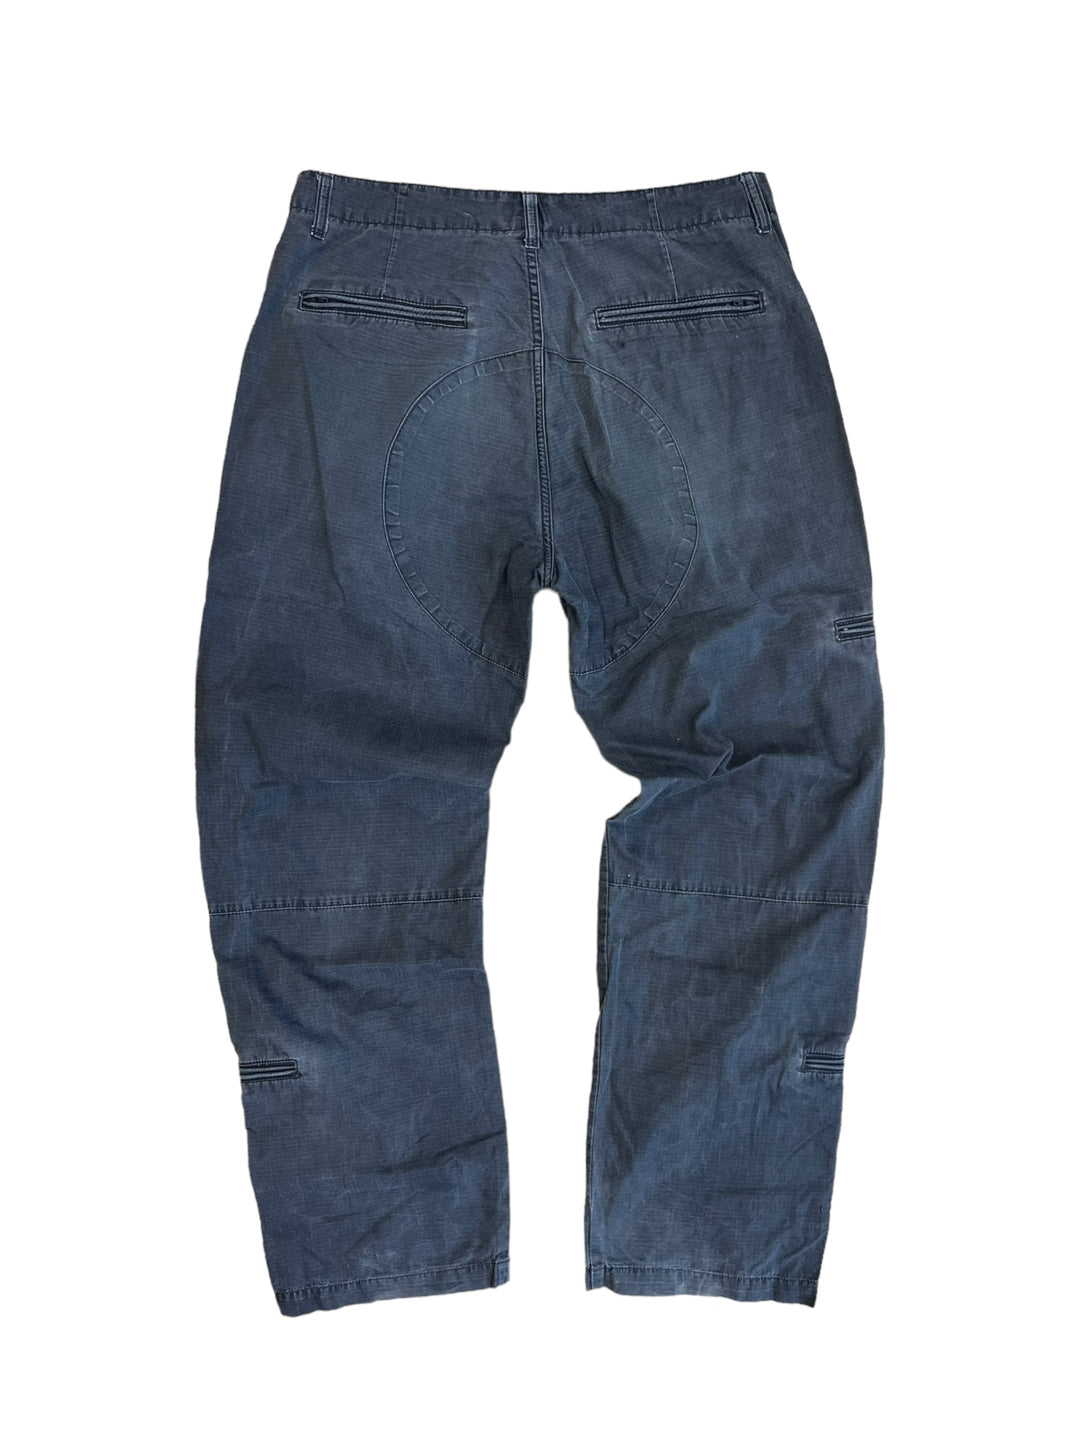 Stüssy vintage grey outer gr pants men’s M/L(33)